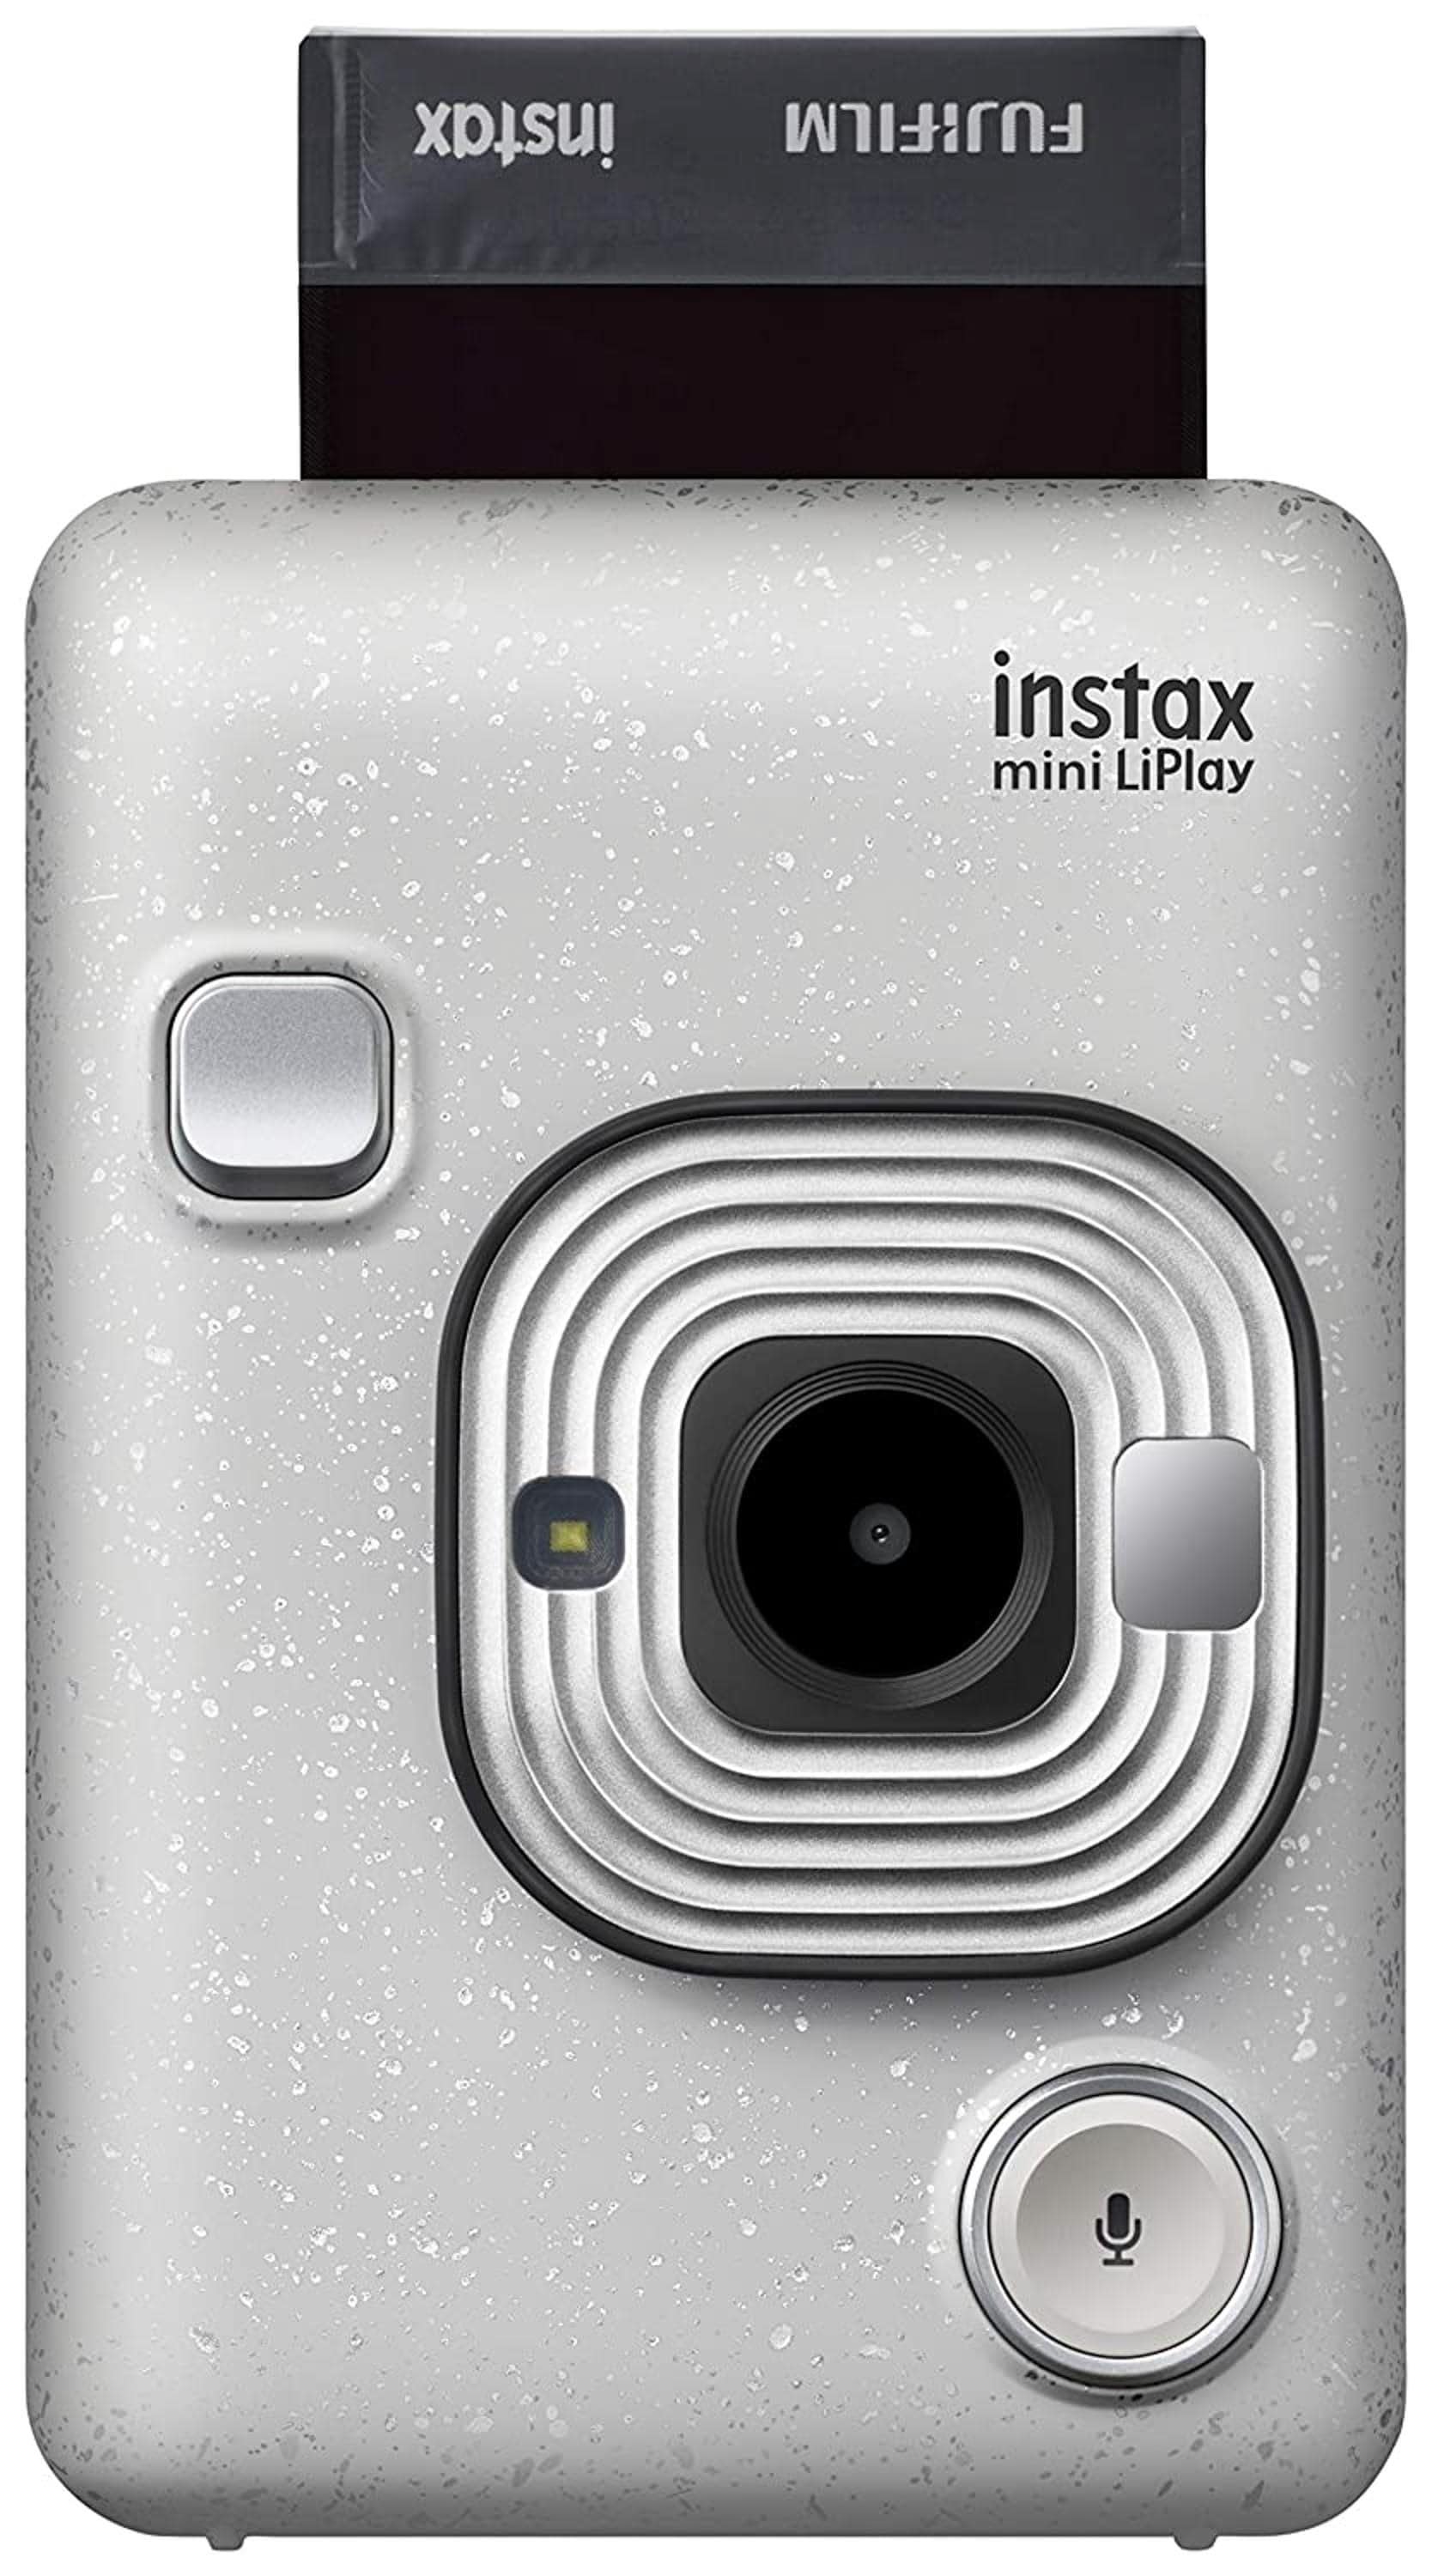 Schelden conversie naar voren gebracht Fujifilm Instax Mini Liplay Hybrid Instant Camera - JioMart